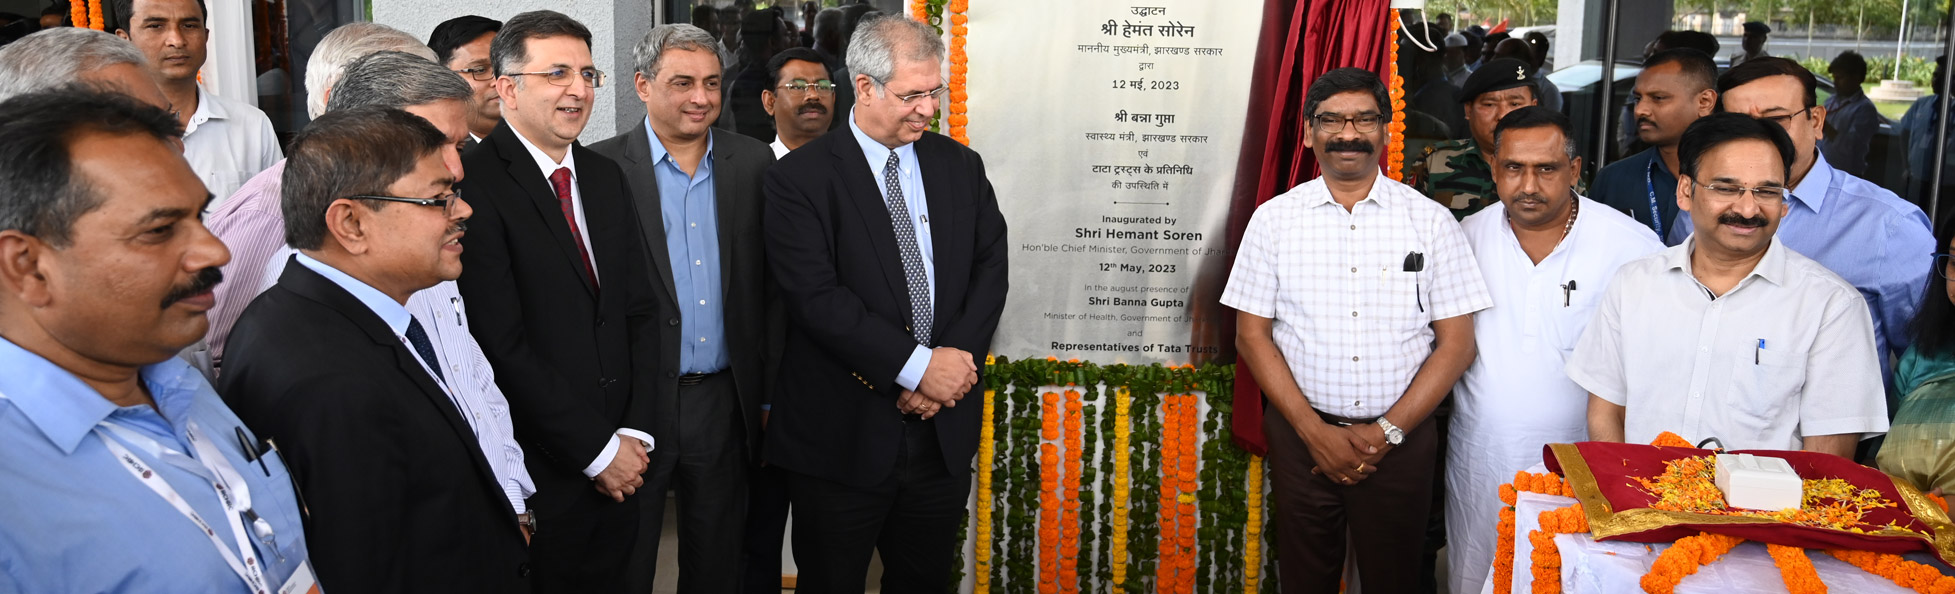 झारखंड के मुख्यमंत्री श्री हेमंत सोरेन ने टाटा ट्रस्ट्स द्वारा स्थापित राँची कैंसर अस्पताल एवं अनुसं